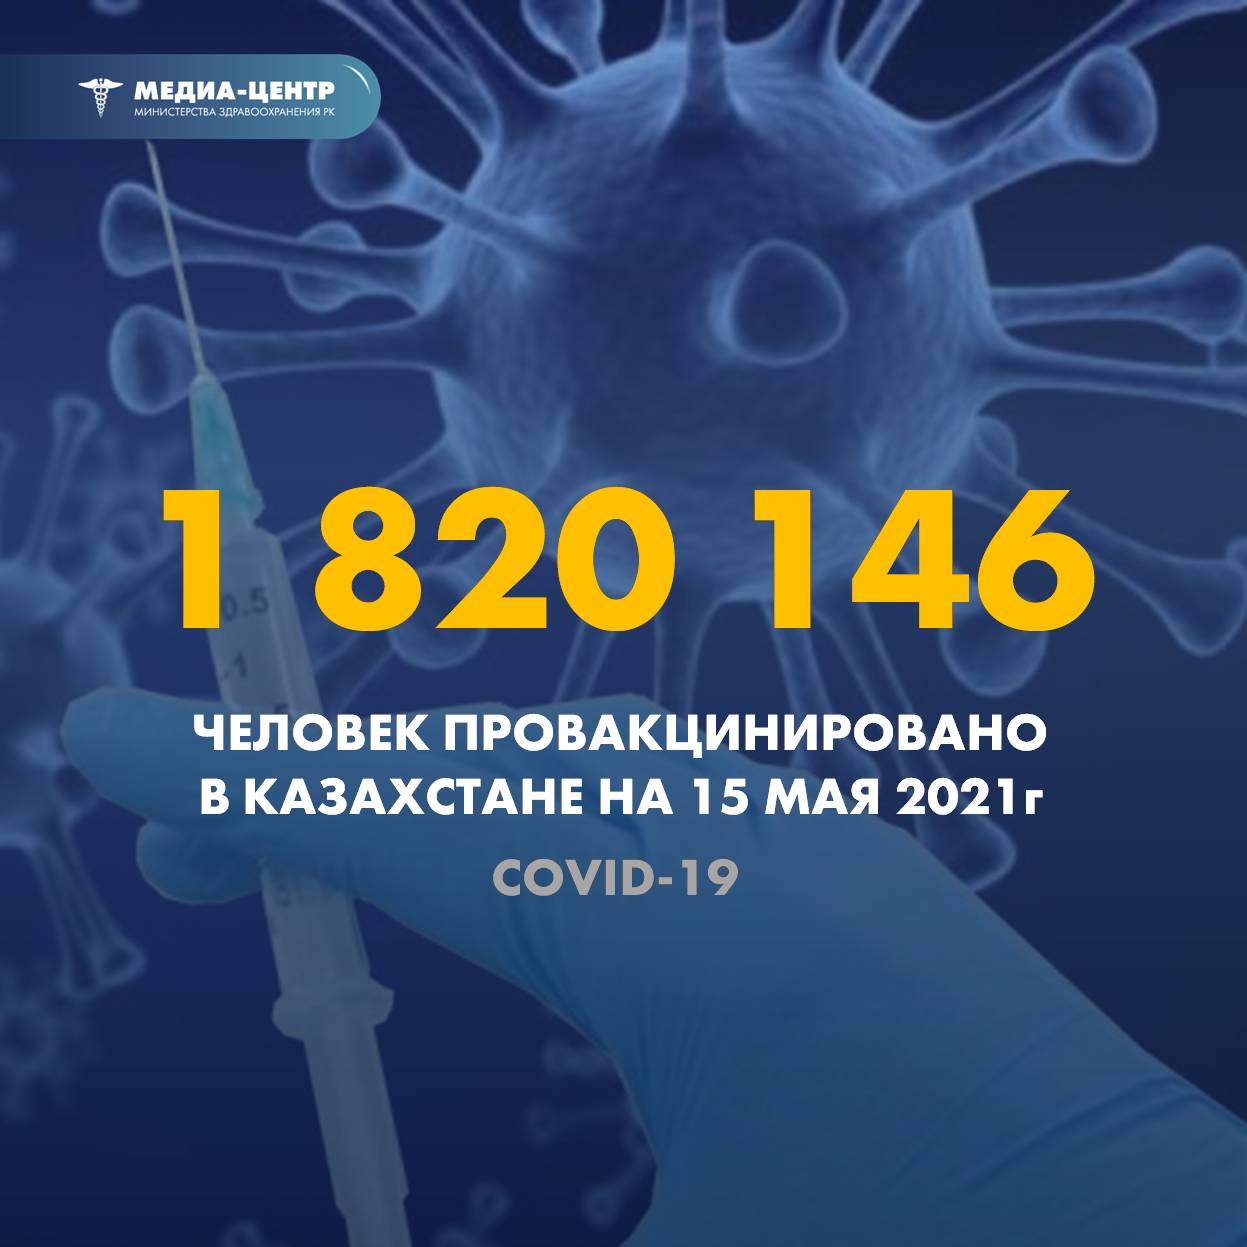 1 820 146 человек провакцинировано в Казахстане на 15 мая 2021 г